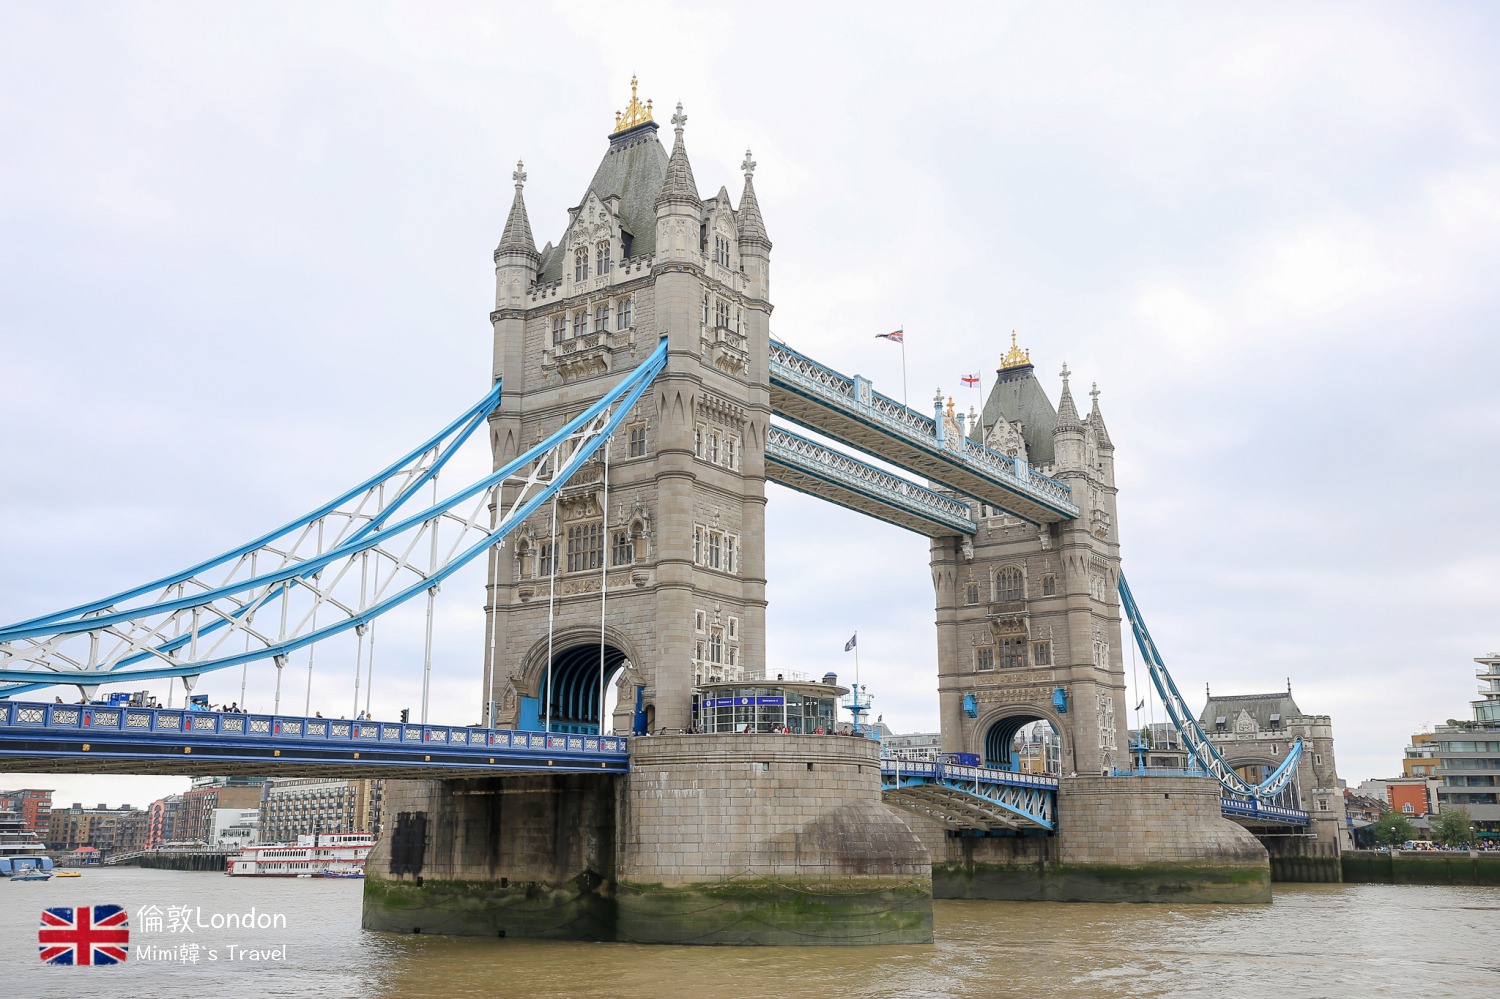 【倫敦景點】倫敦塔橋 Tower Bridge：倫敦必拍經典景色，空中步道博物館參觀分享